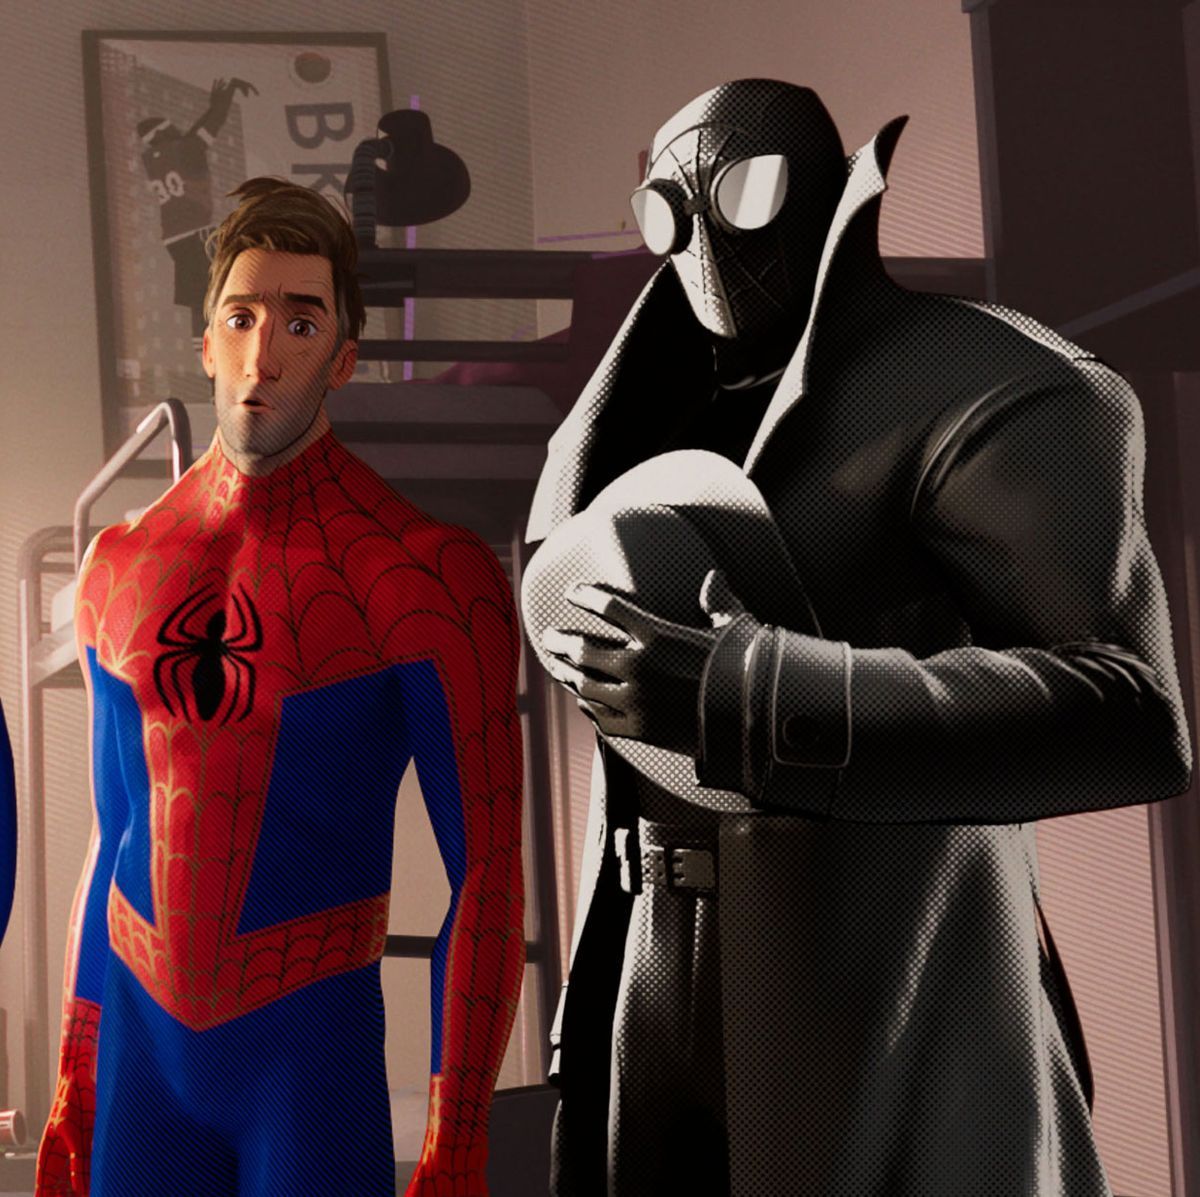 Spider-Man: Beyond the Spider-Verse: Cast, Release Date